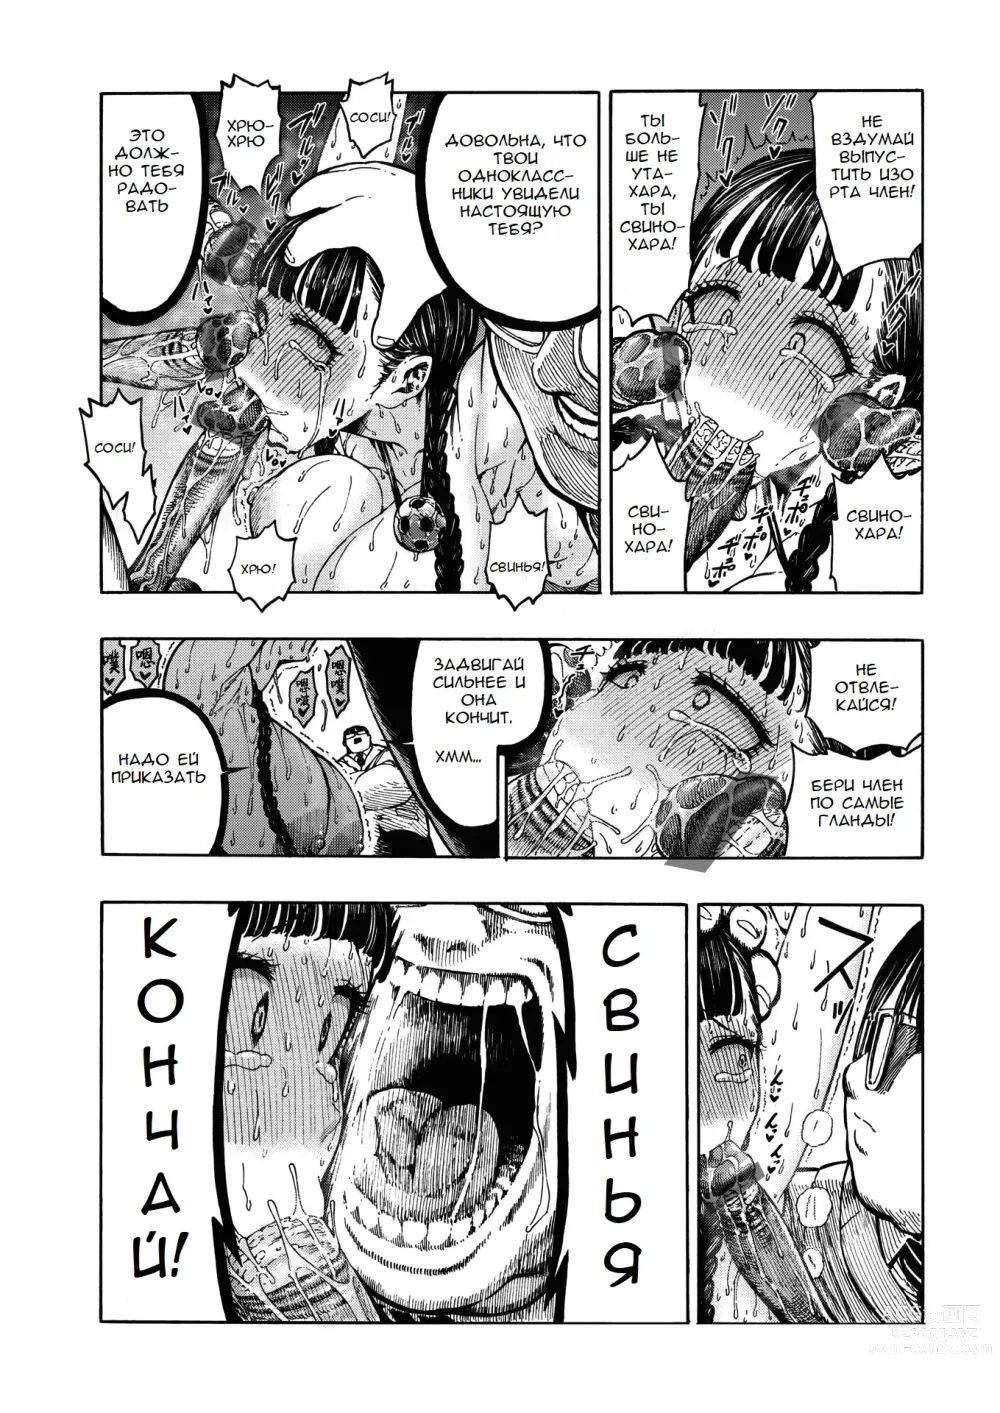 Page 14 of manga Buta to Present